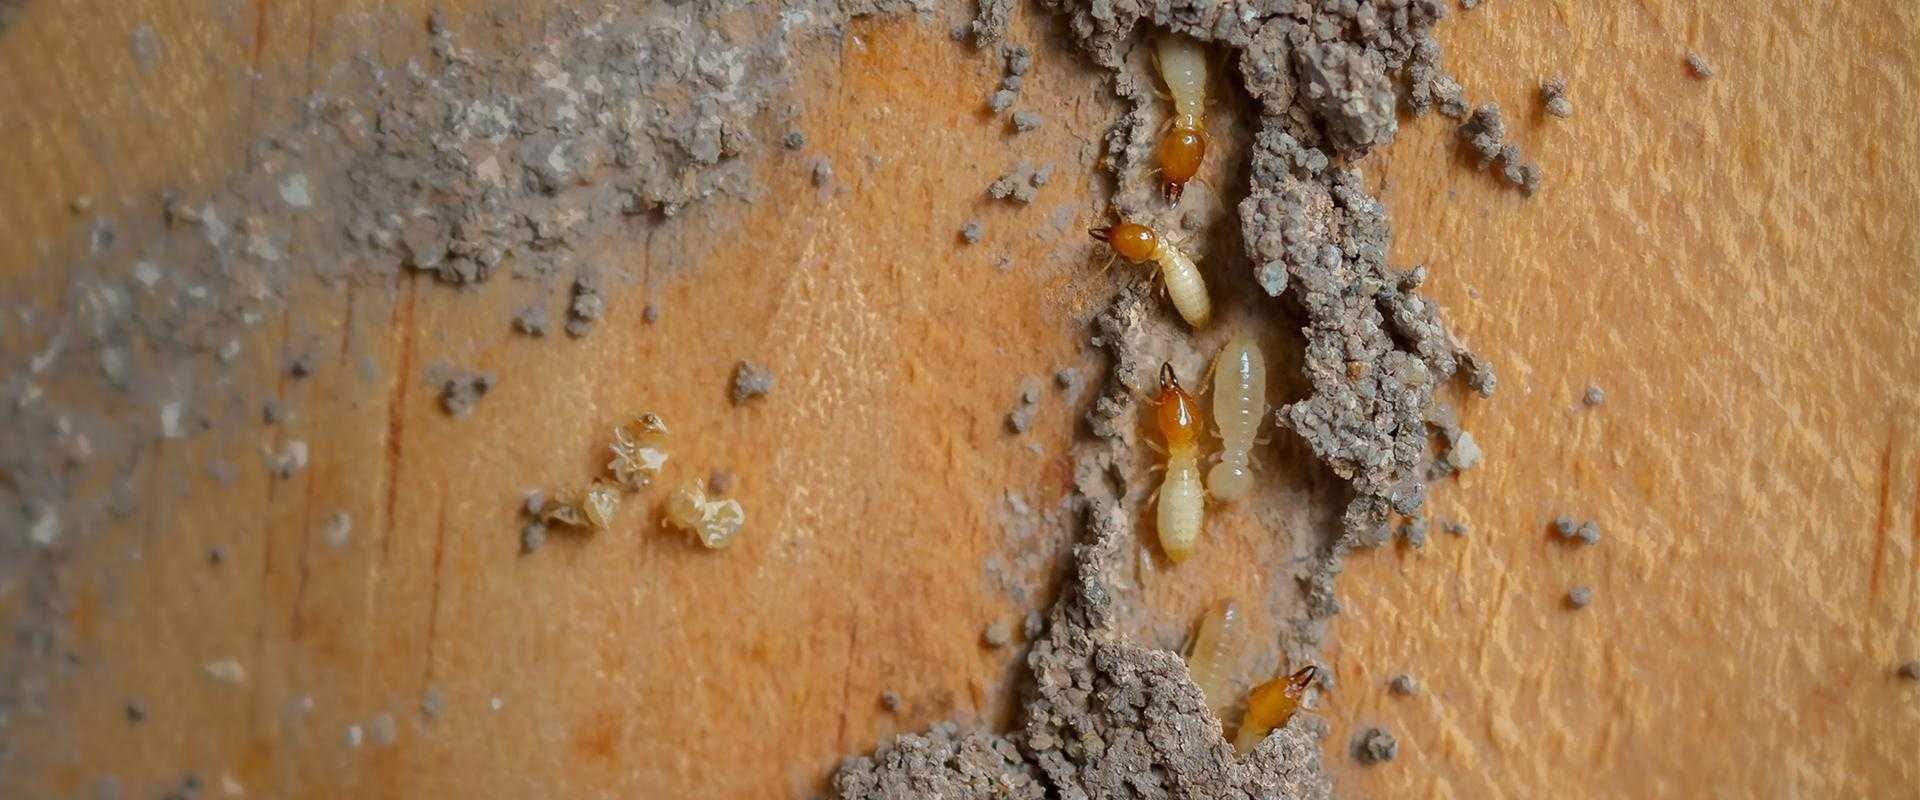 Subterranean termite control West Palm Beach